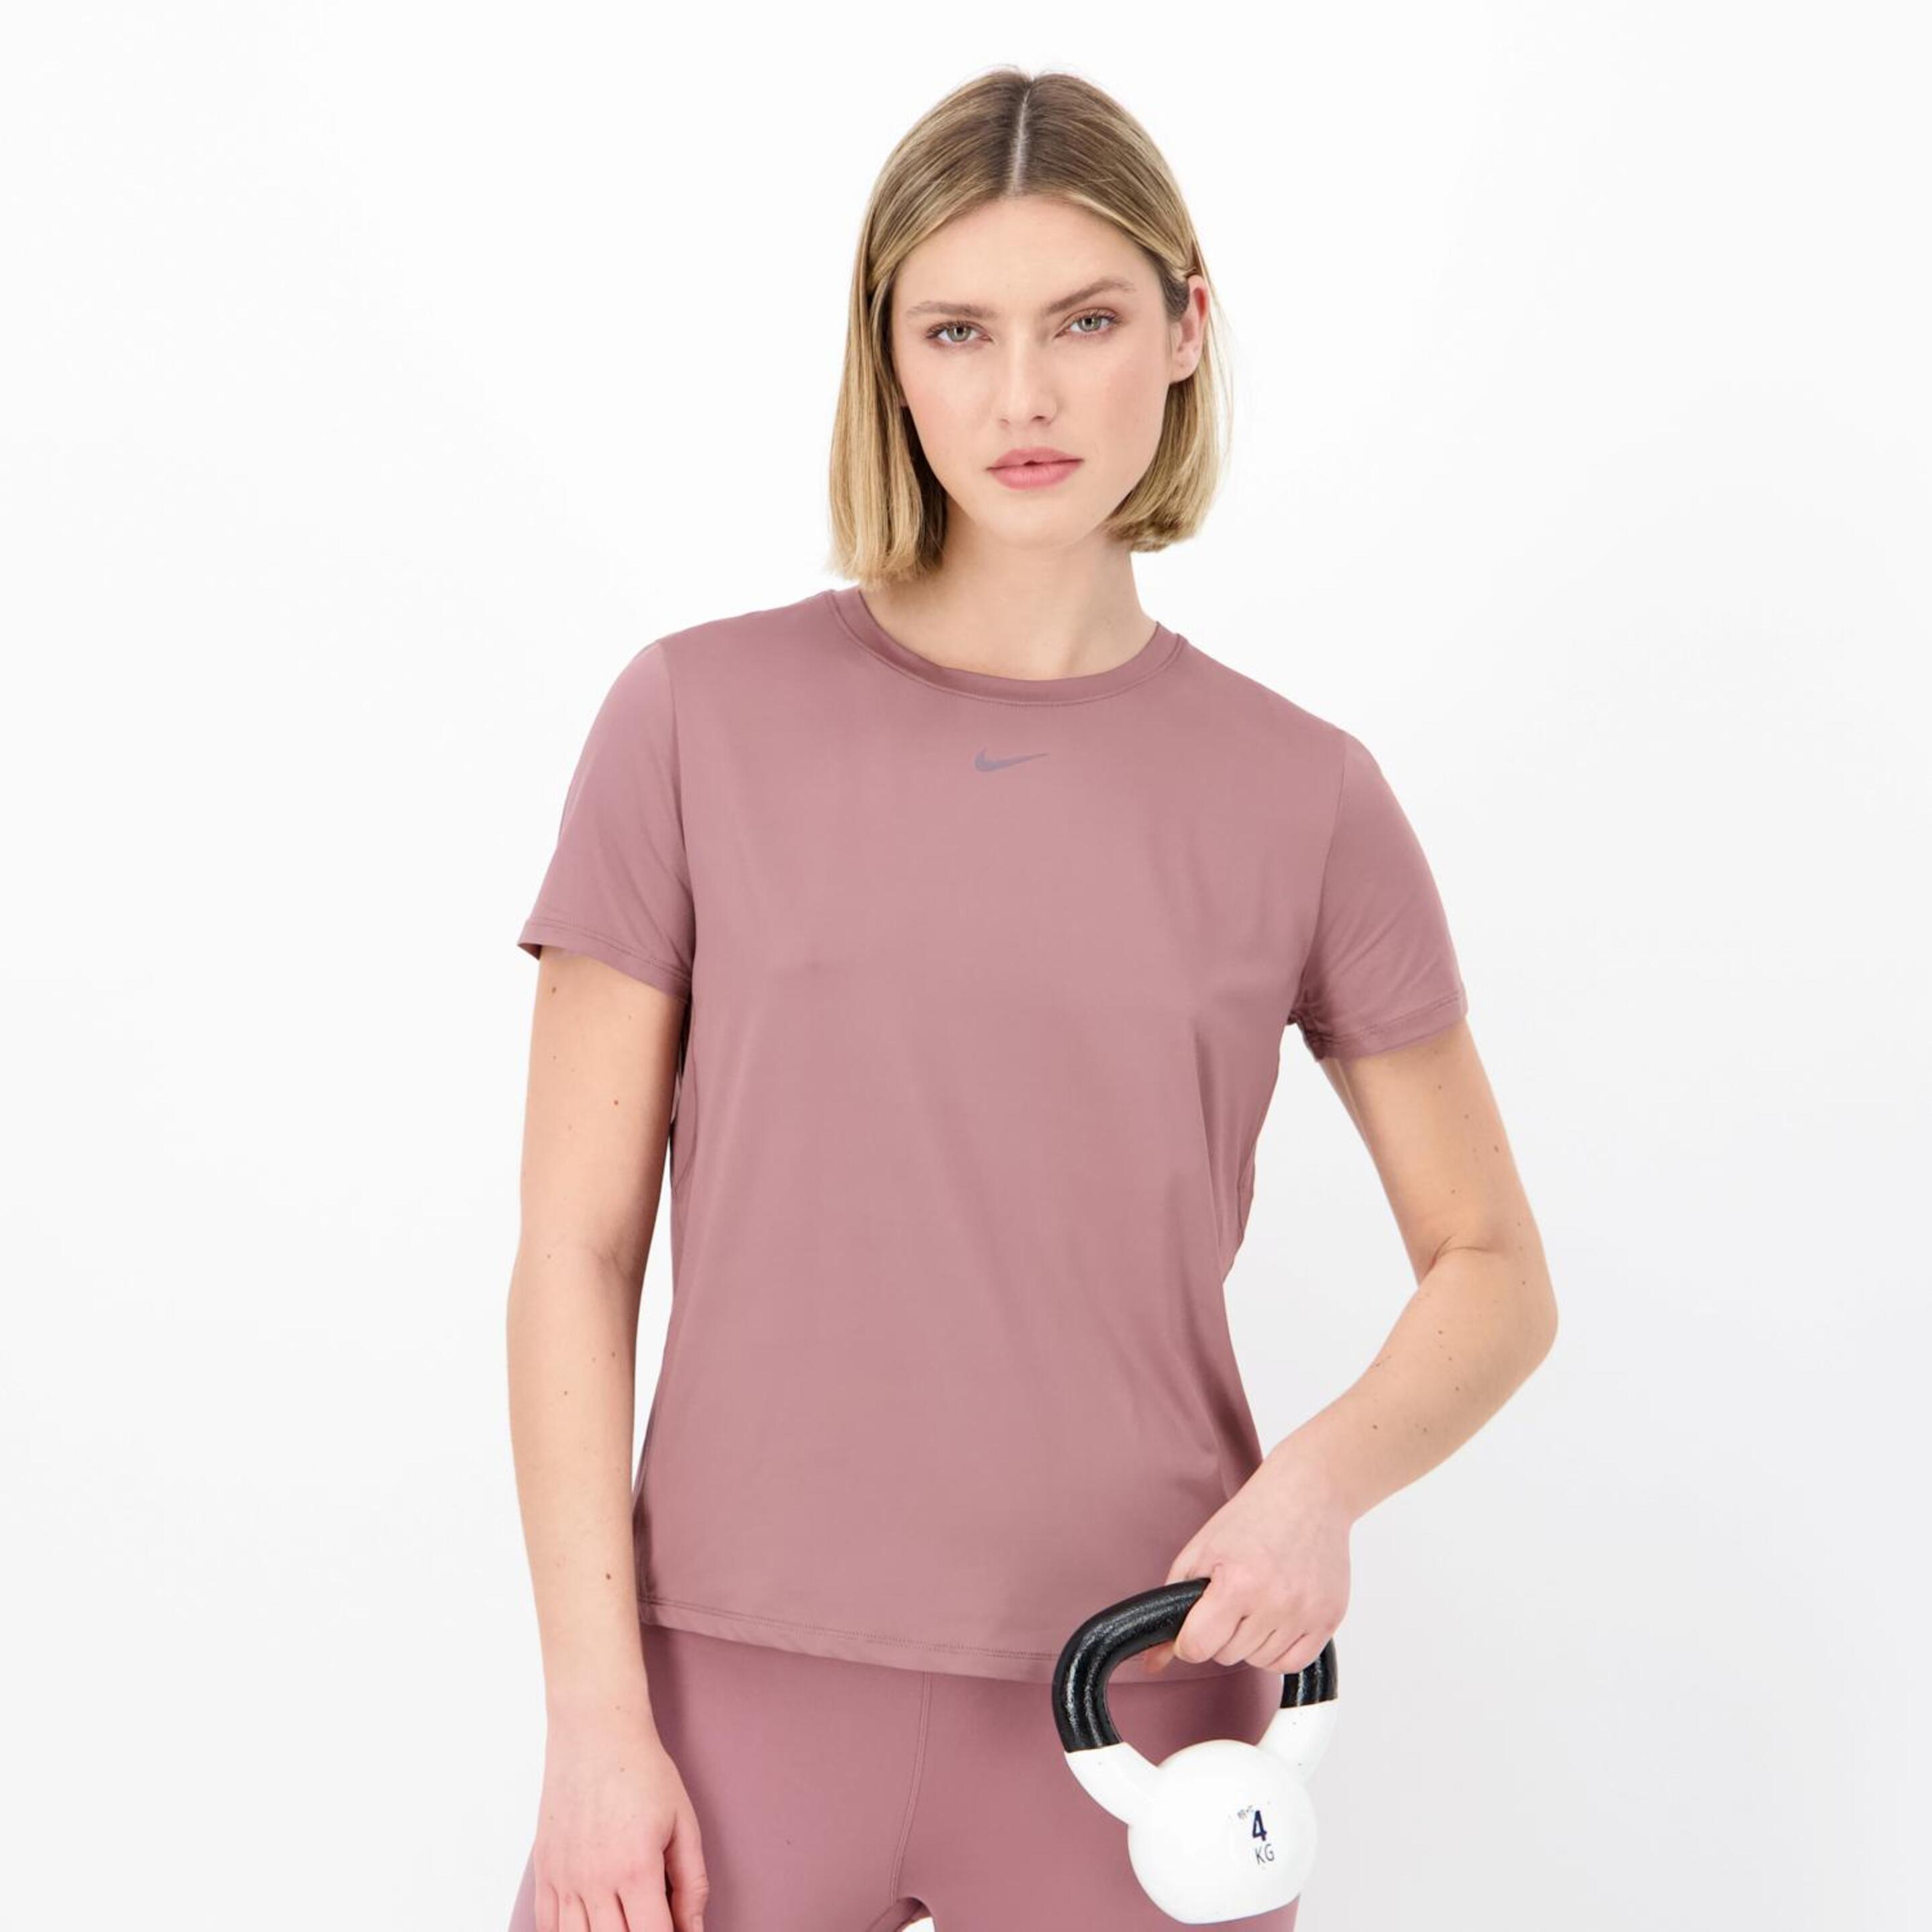 Nike One - morado - Camiseta Fitness Mujer